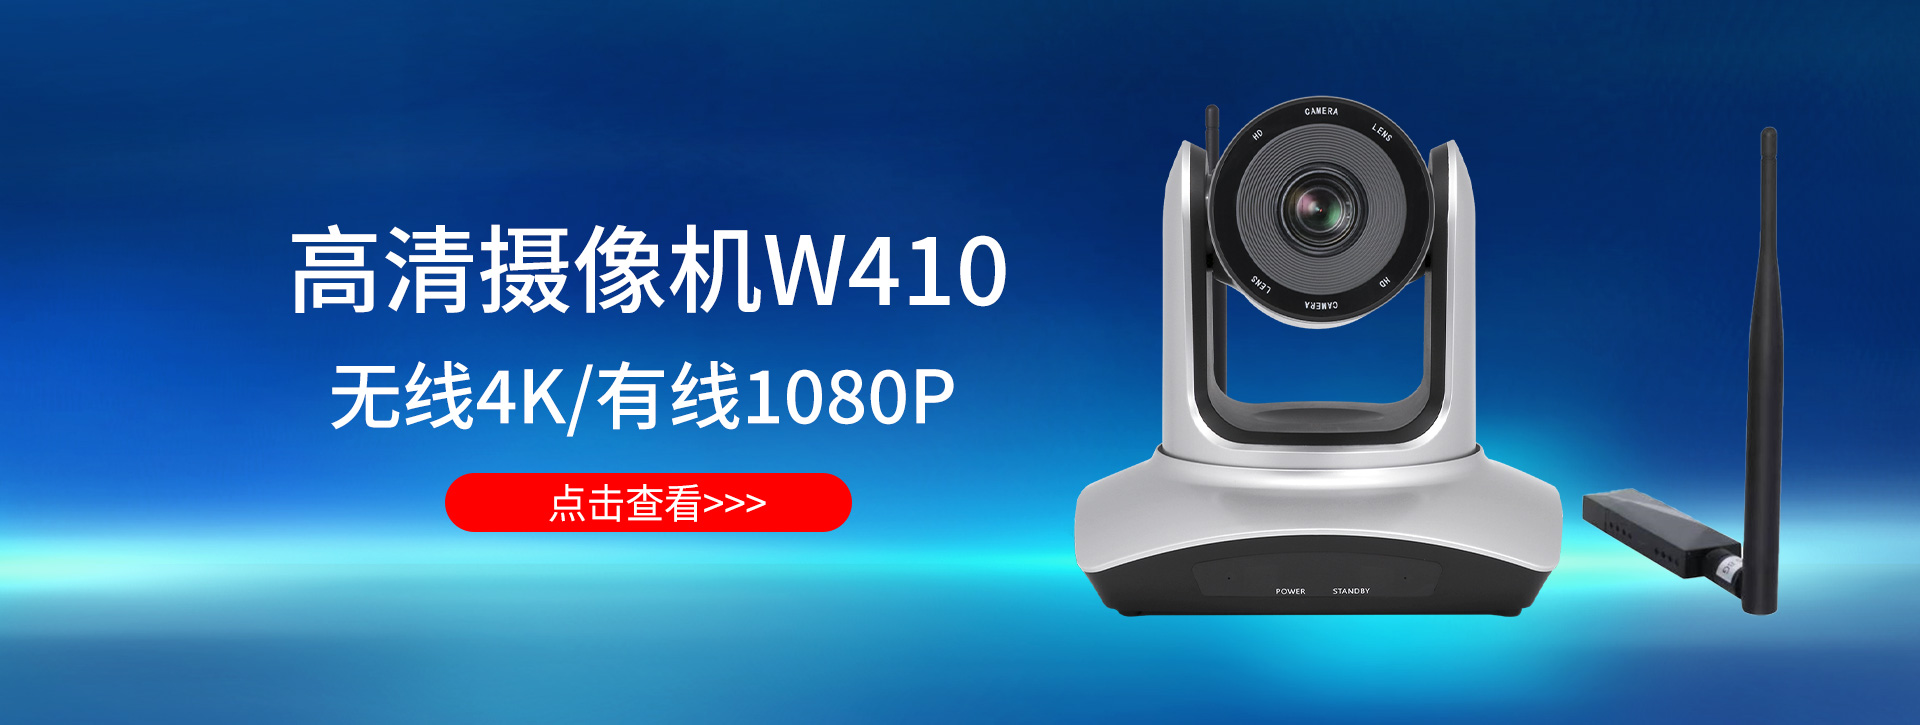 W410无线4K摄像头